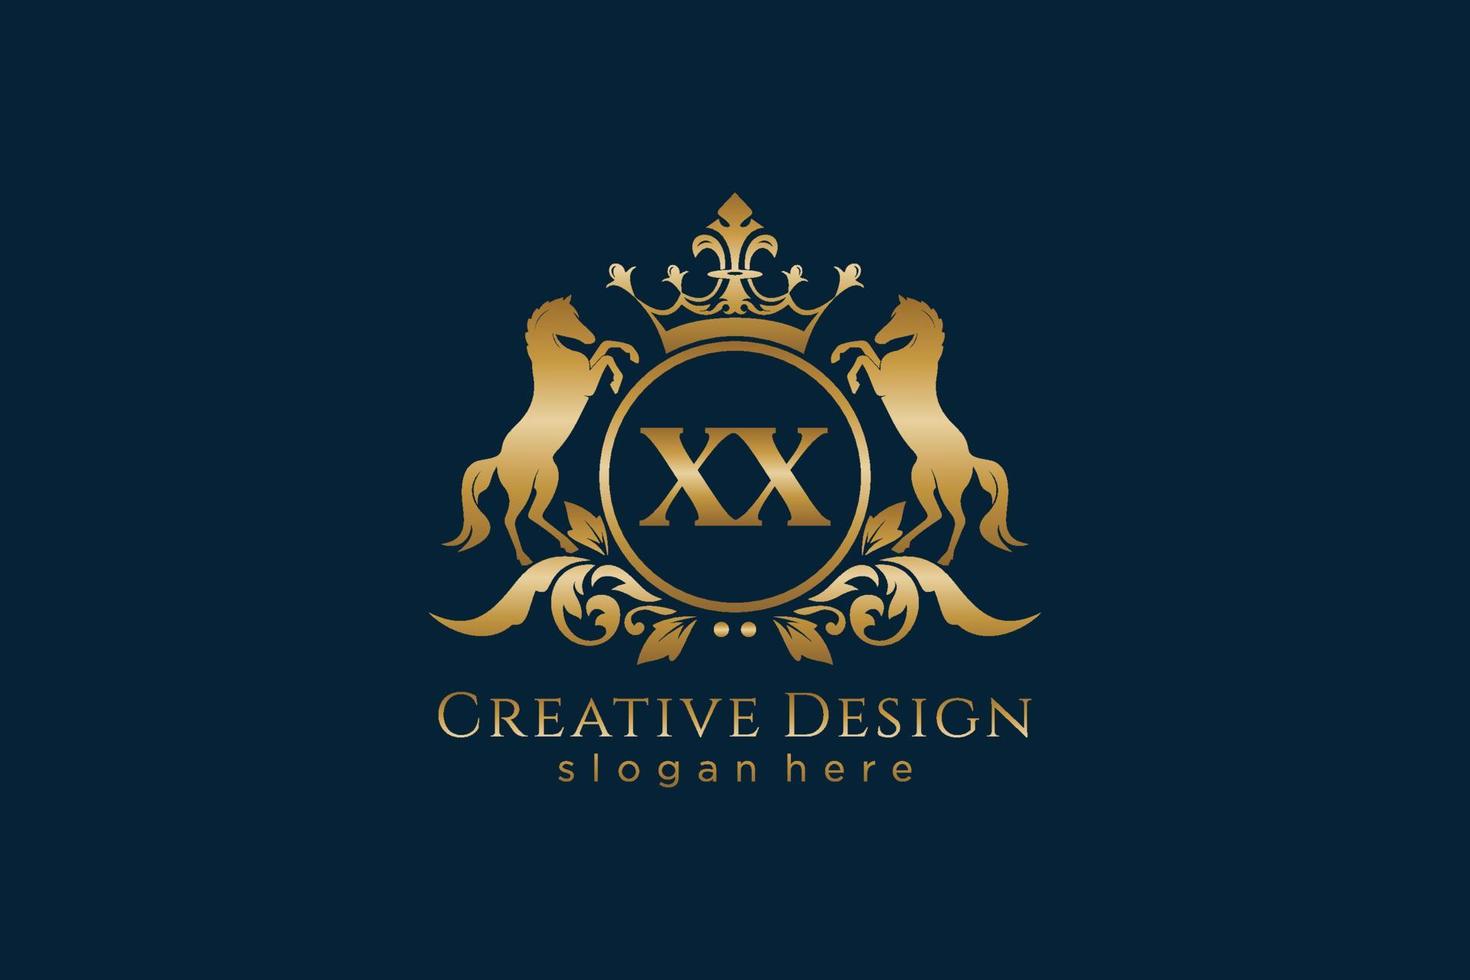 cresta dorada retro inicial xx con círculo y dos caballos, plantilla de insignia con pergaminos y corona real - perfecto para proyectos de marca de lujo vector